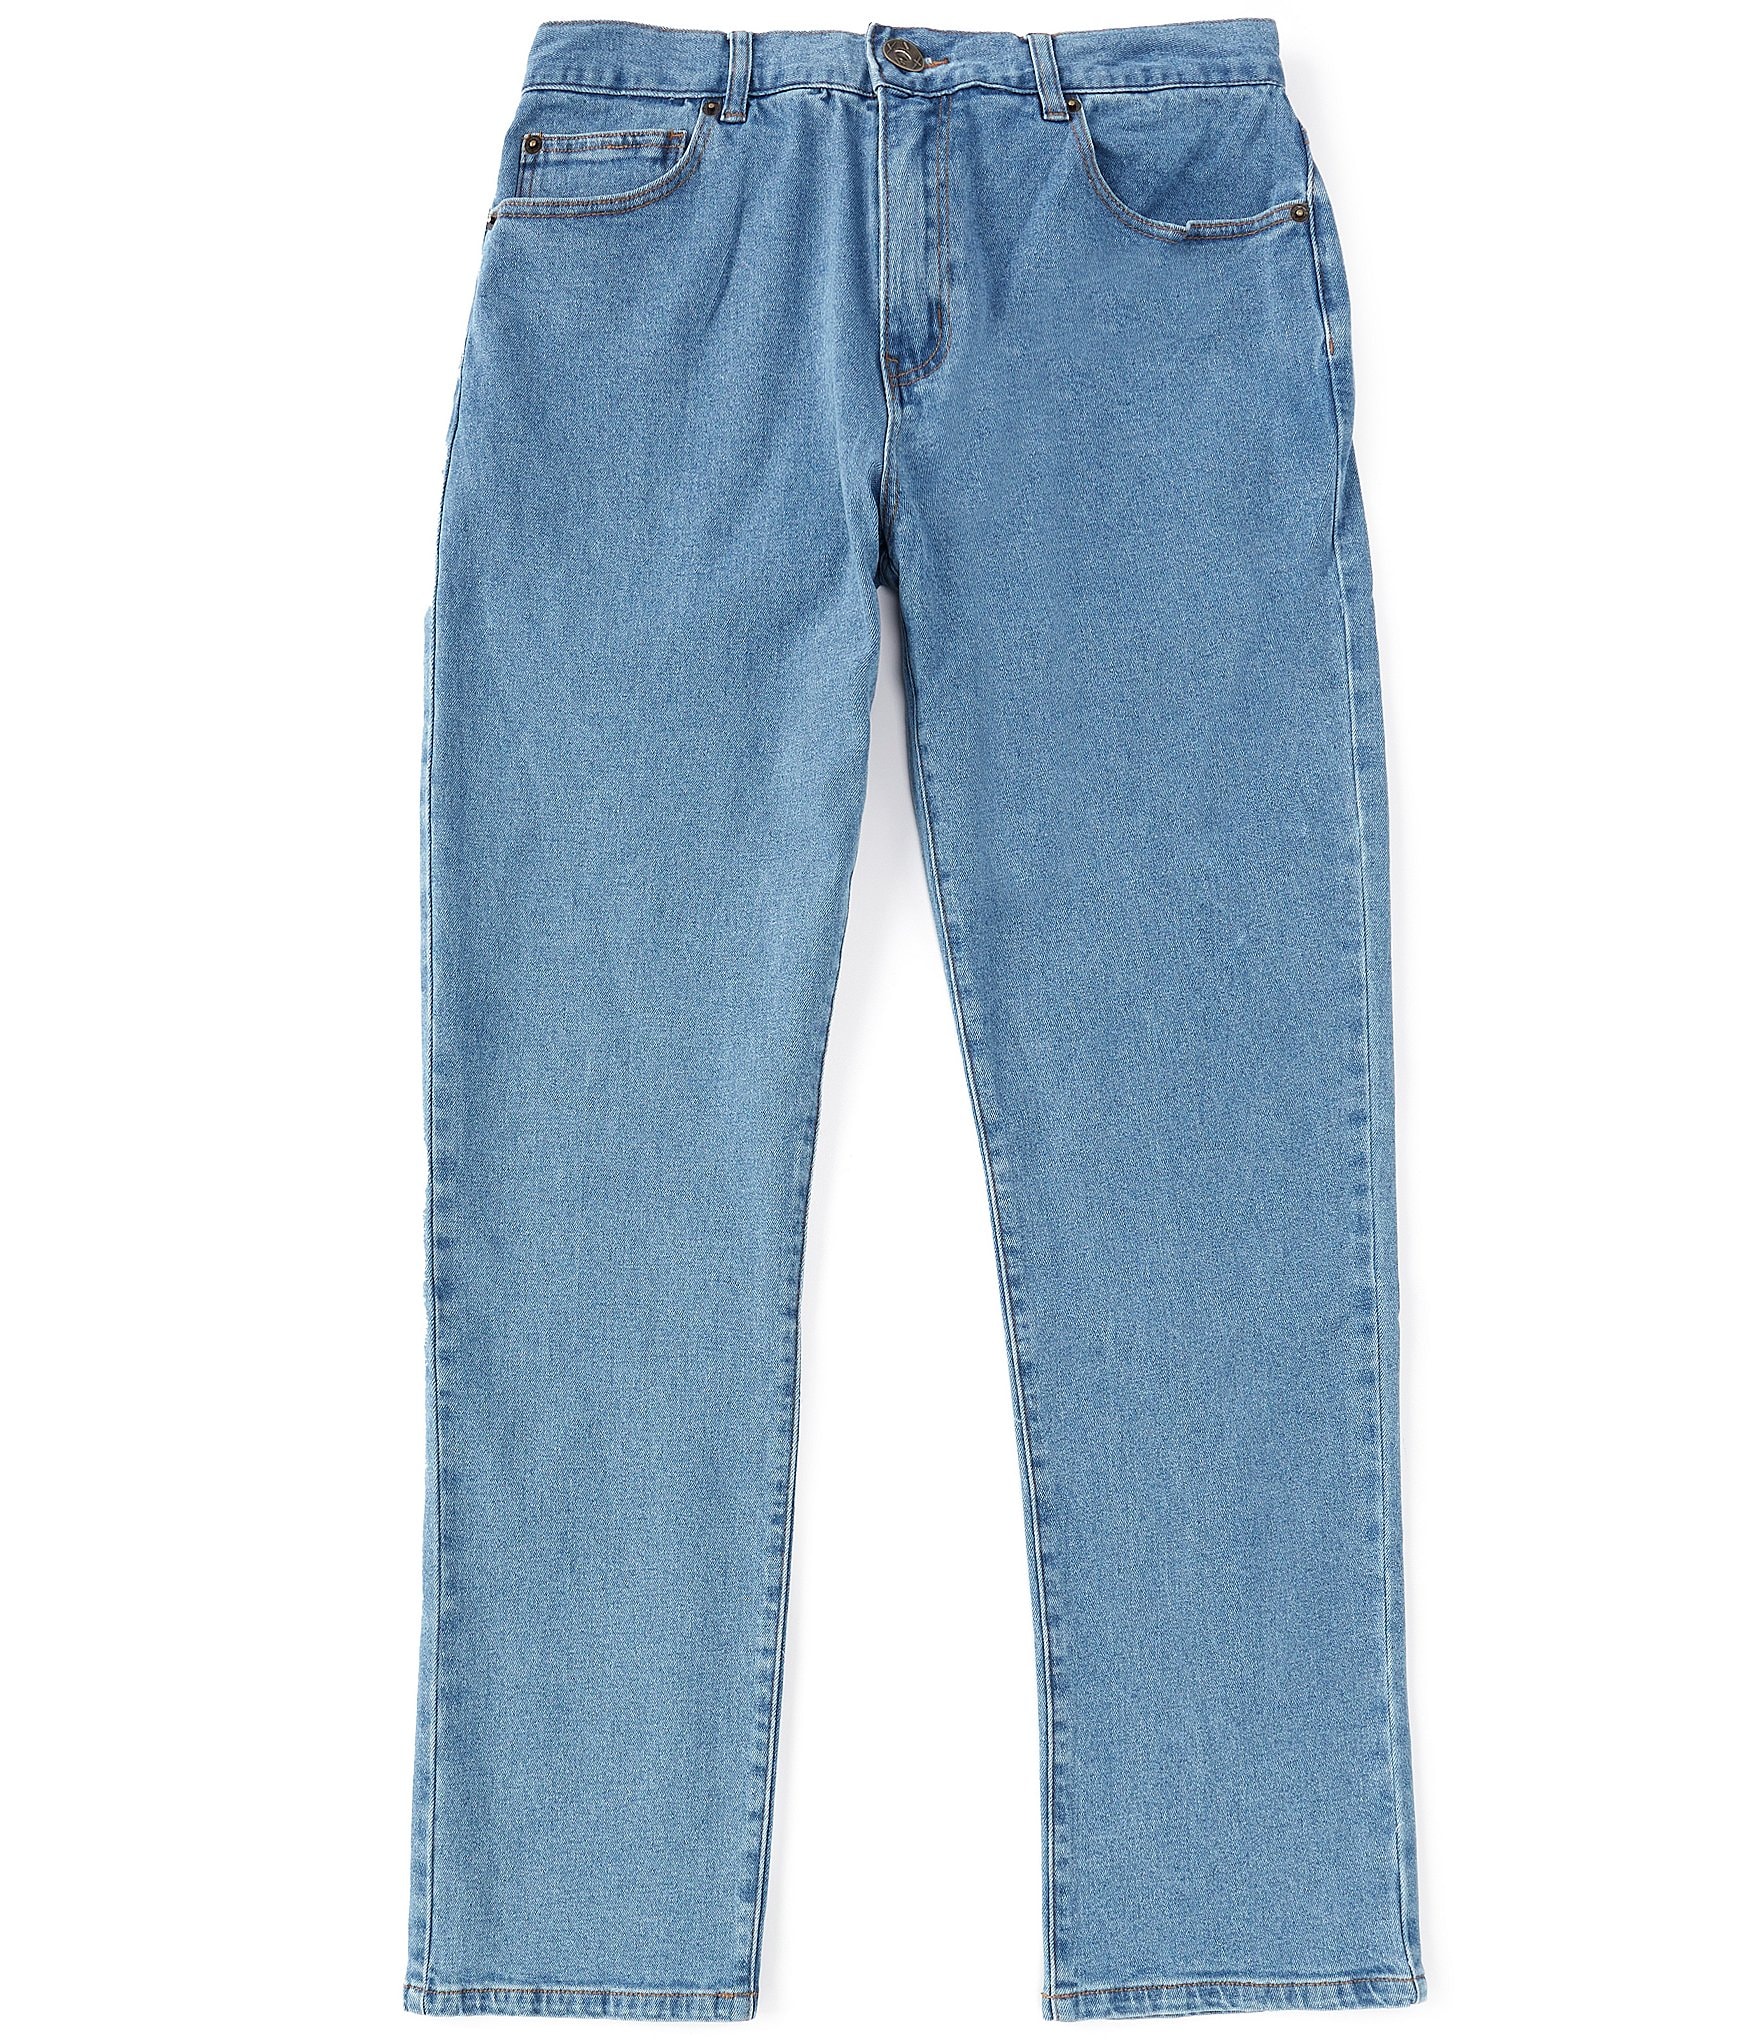 Lira Clothing Briscoe Straight Fit 5-Pocket Denim Jeans | Dillard's